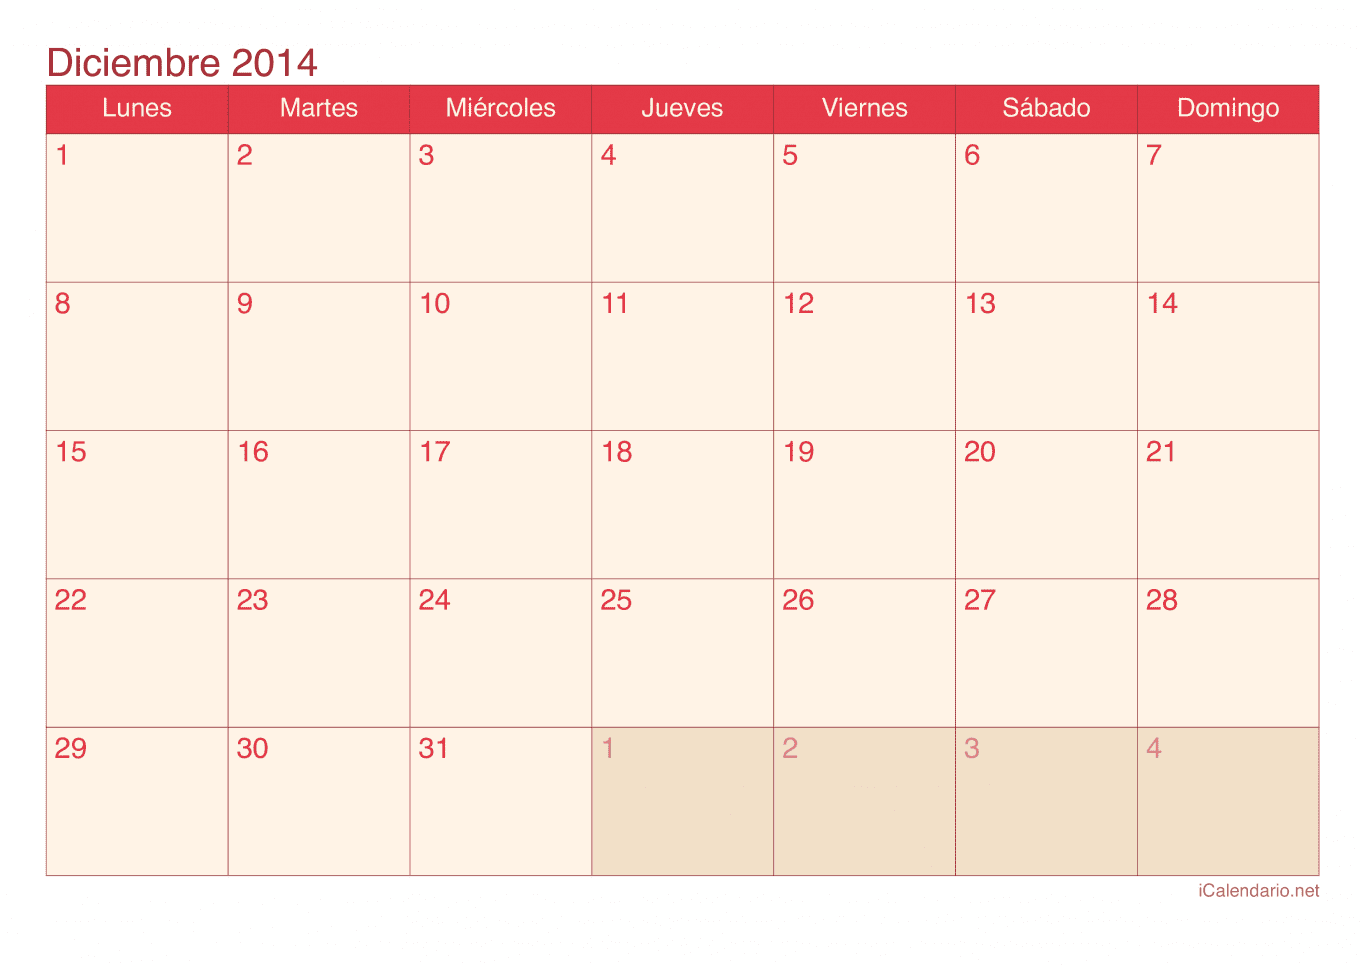 Calendario de diciembre 2014 - Cherry